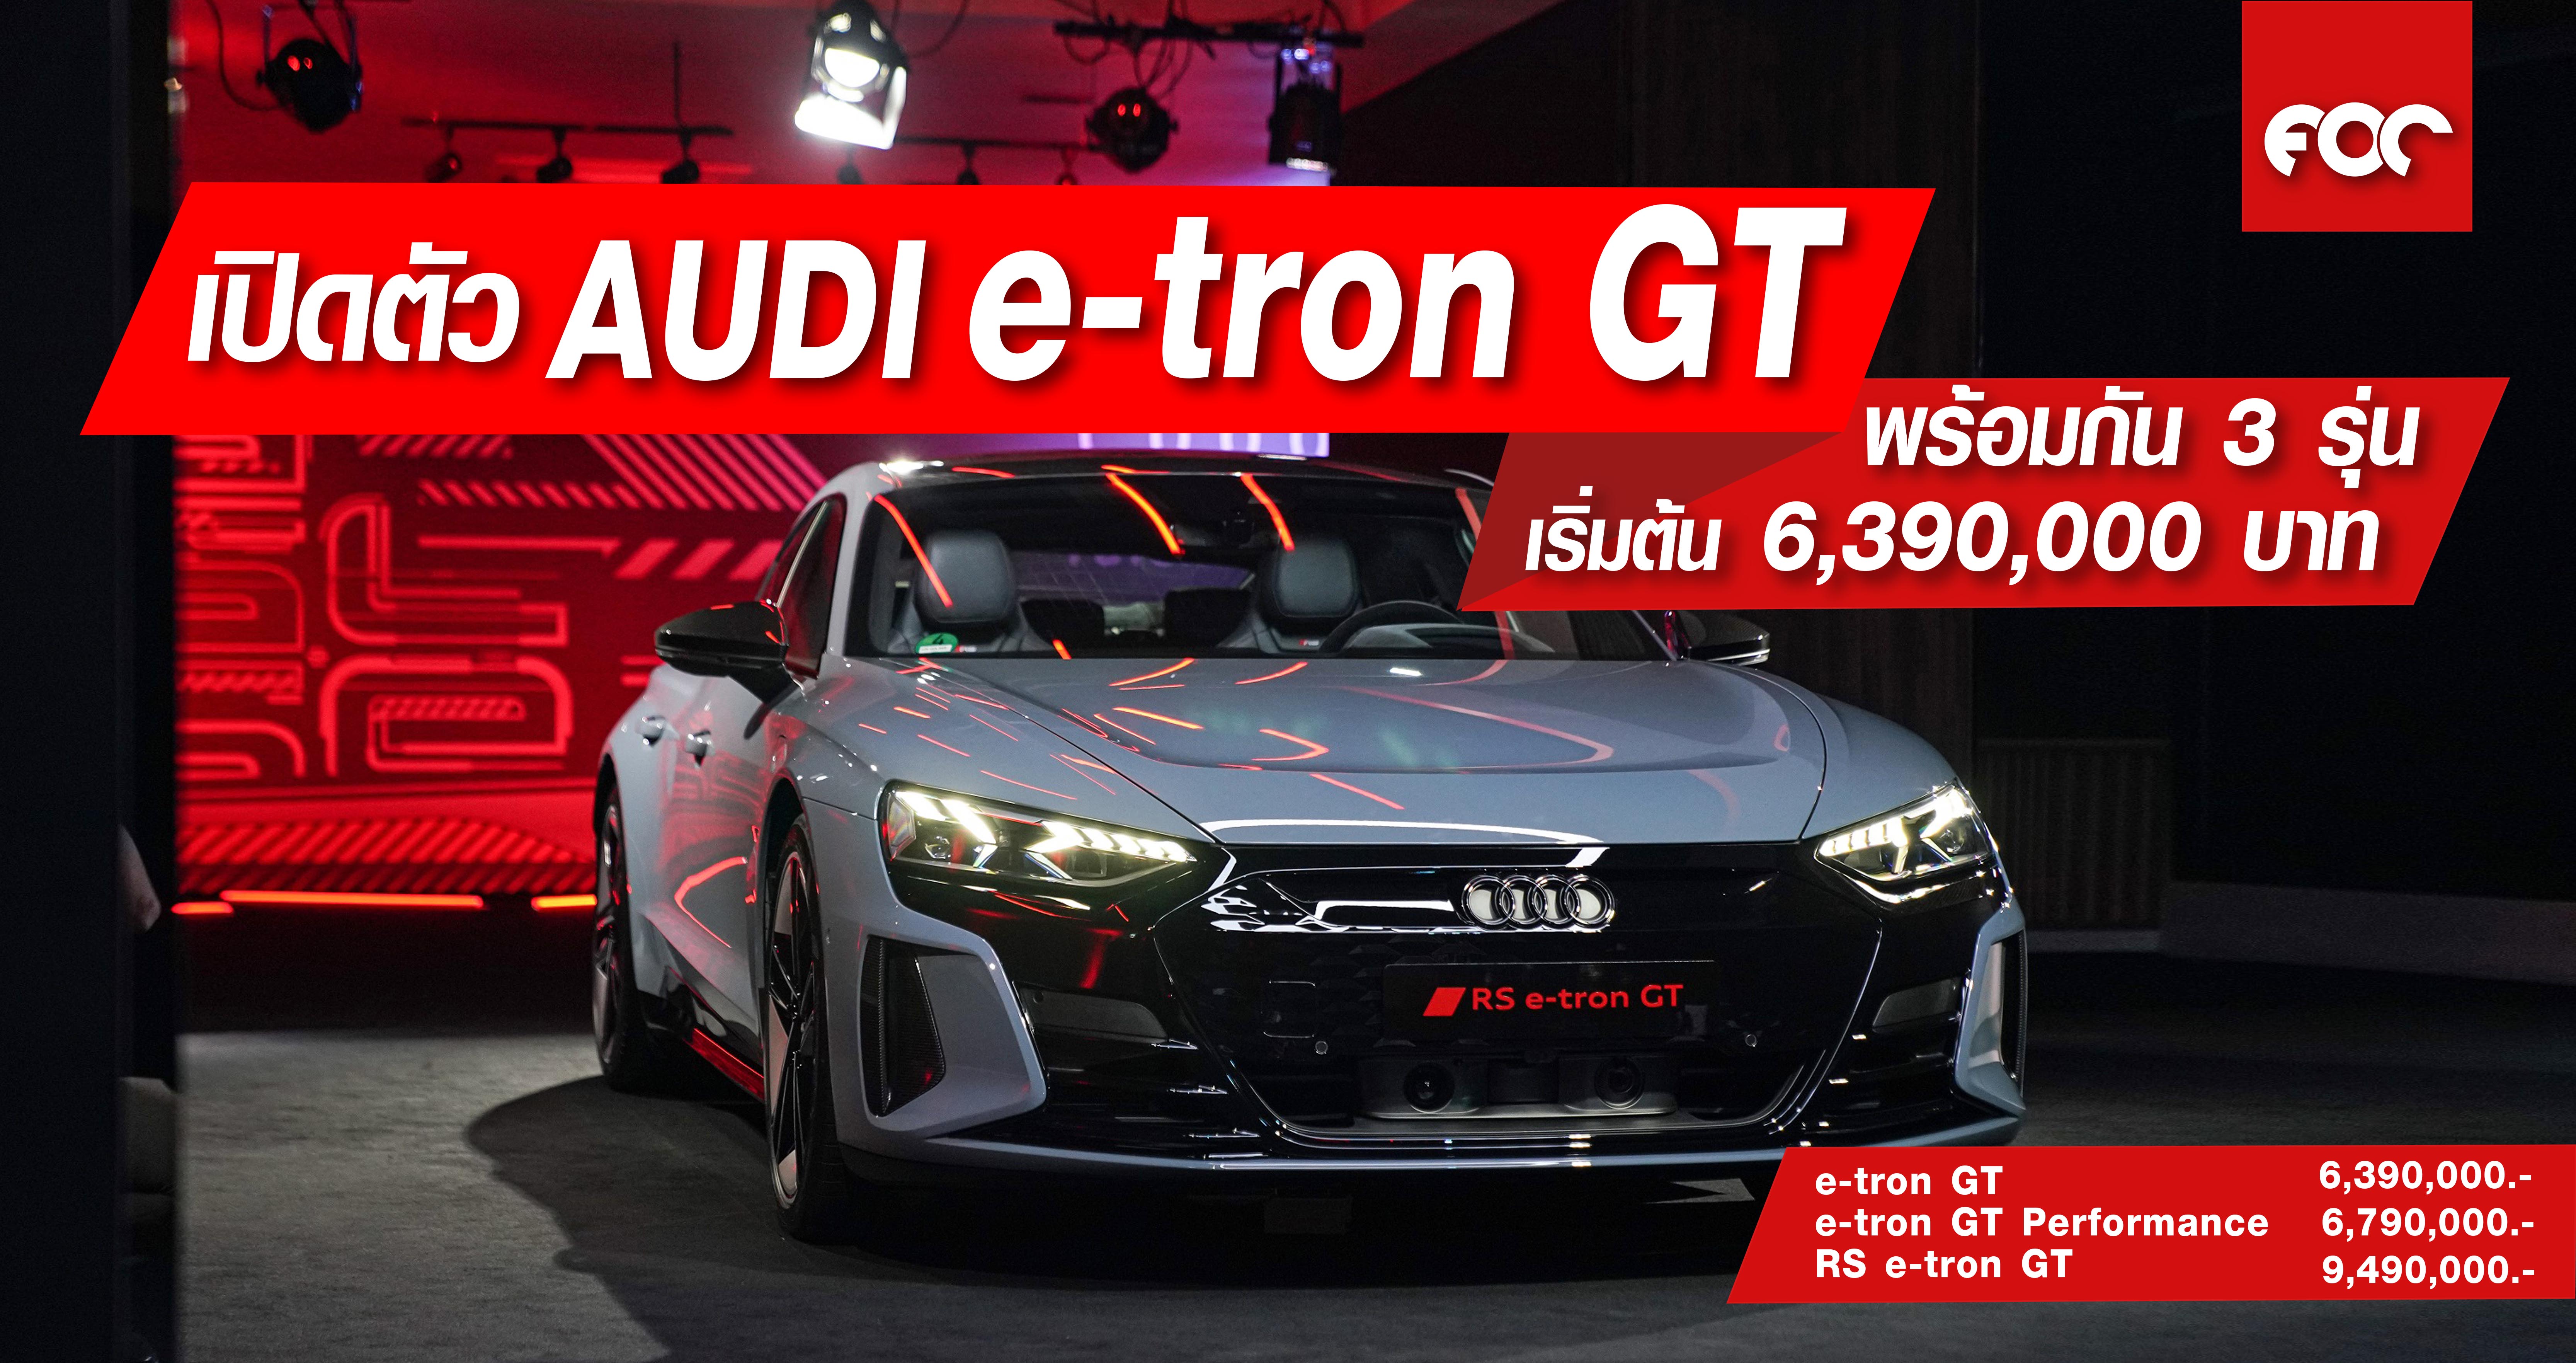 เปิดตัว Audi e-tron GT พร้อมกัน 3 รุ่น เริ่มต้น 6,390,000 บาท